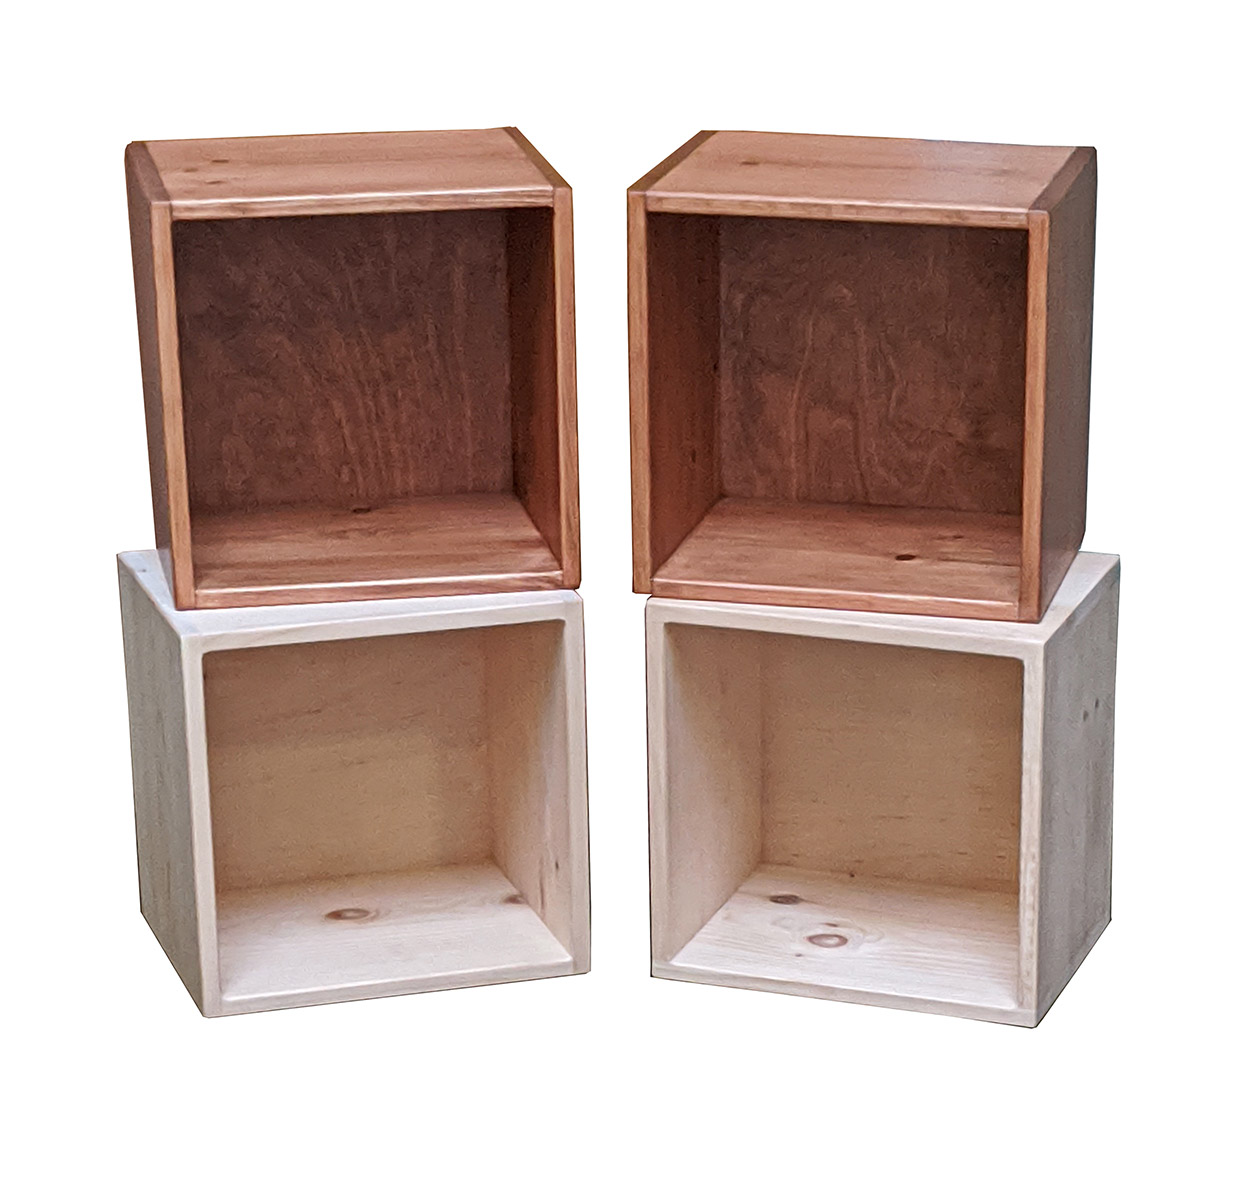 Pine Alder Furniture Fenton, Unfinished Wood Cube Shelves